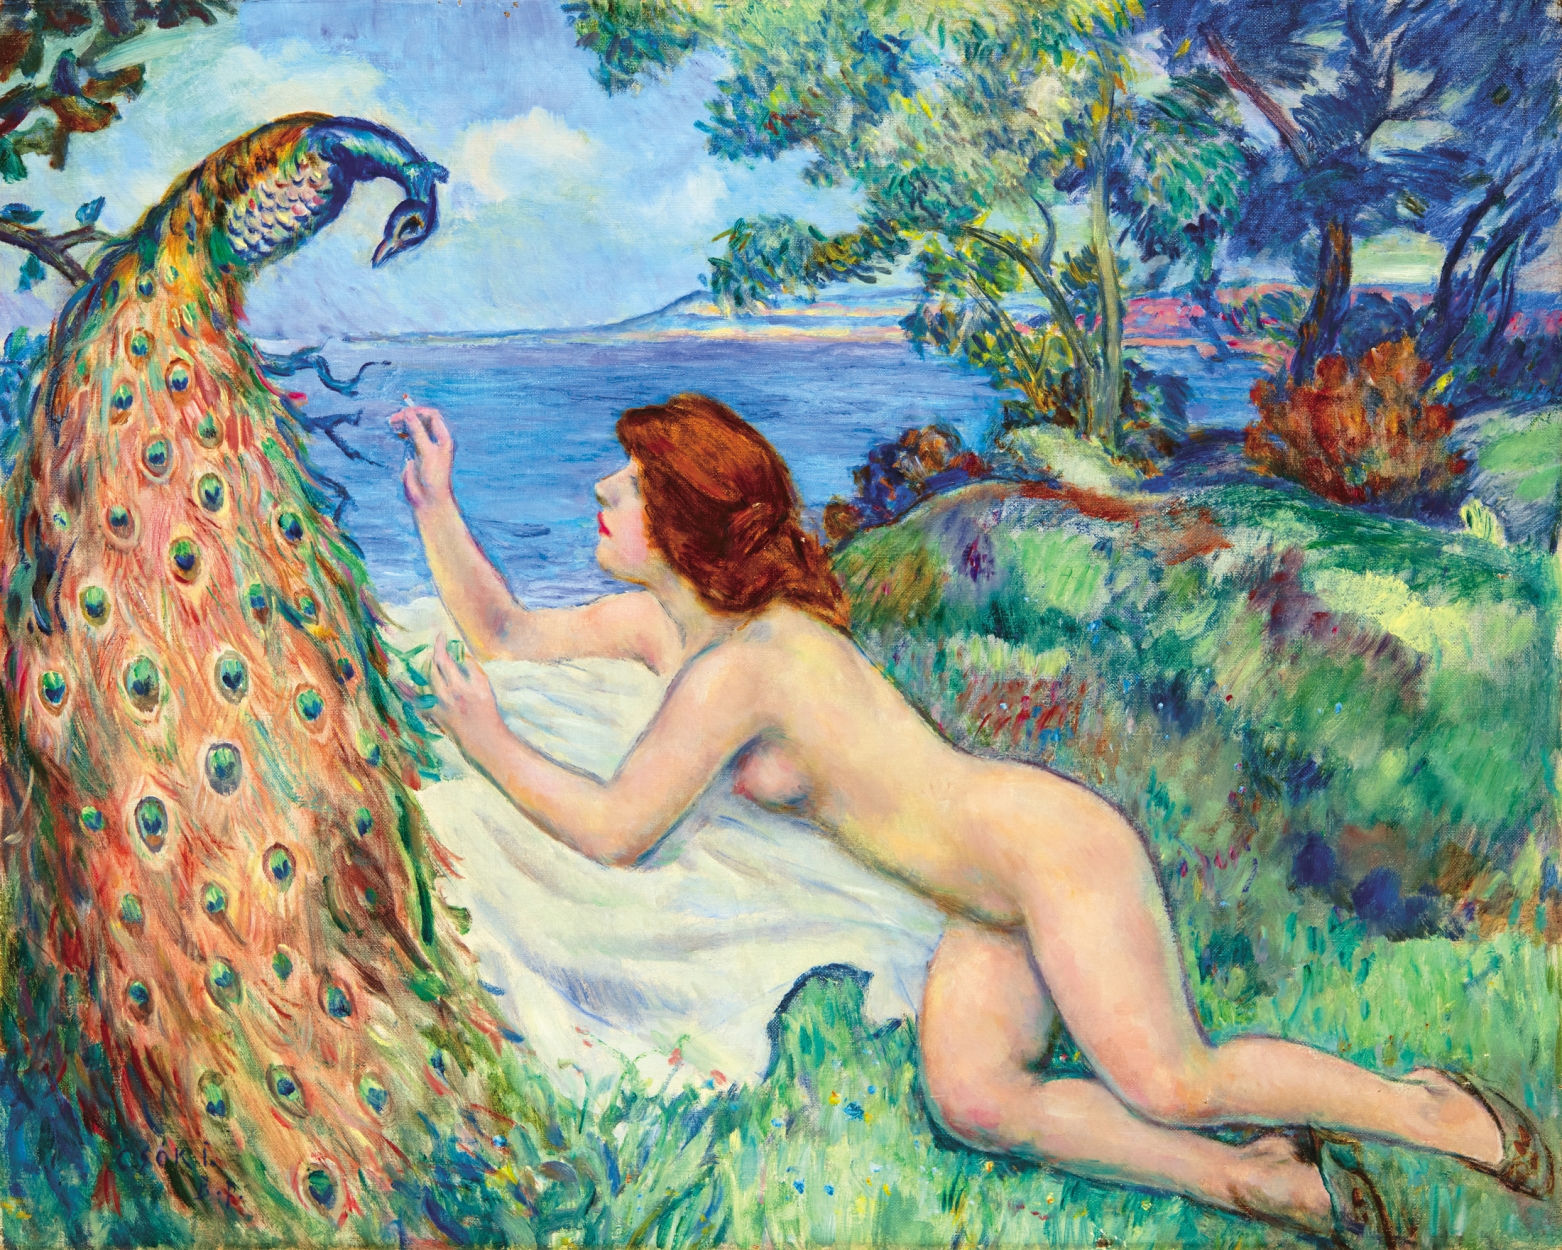 Csók István (1865-1961) Nude with a Peacock